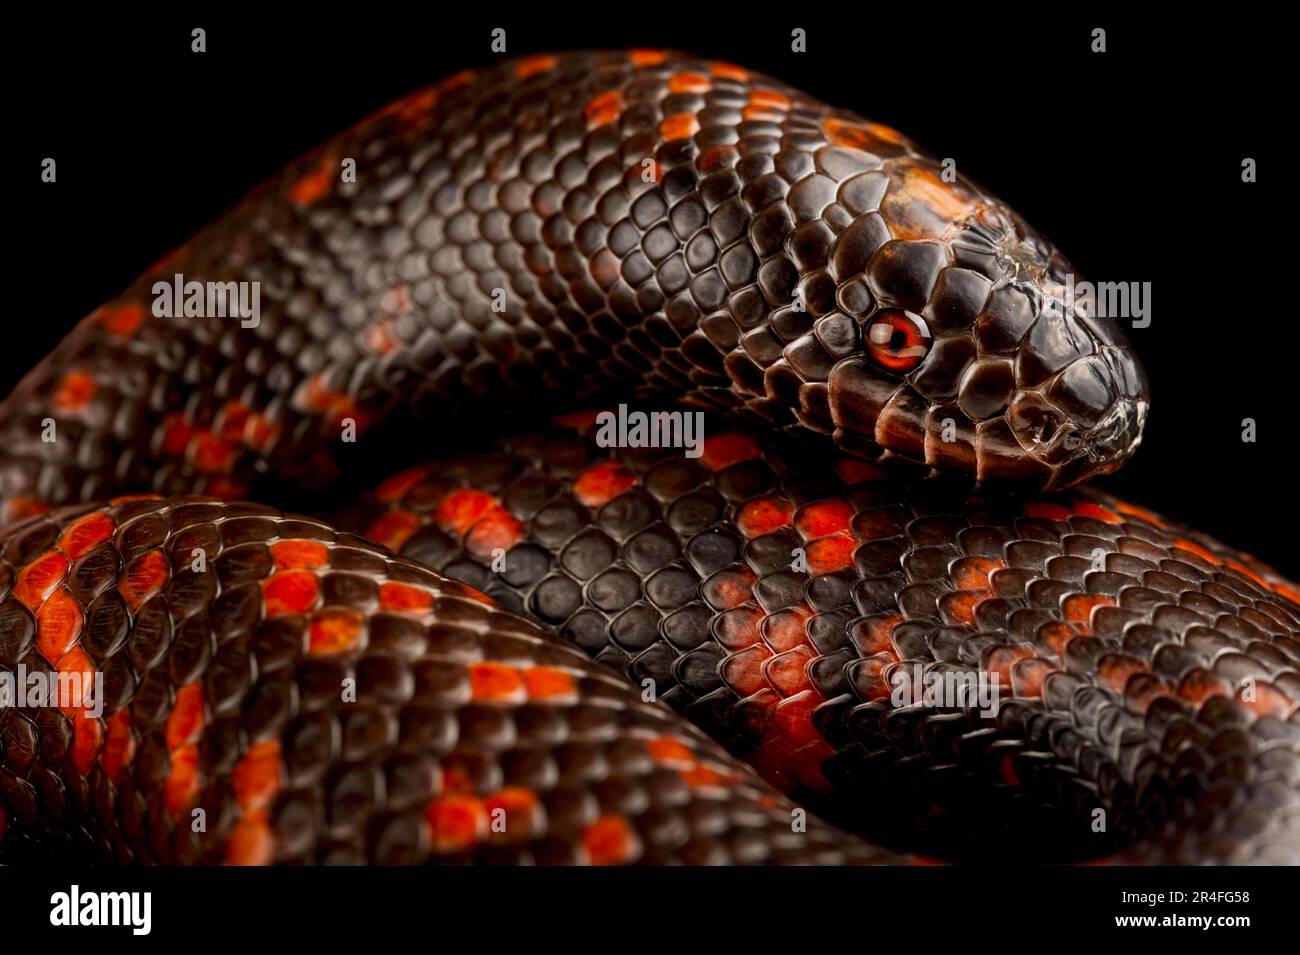 African burrowing python (Calabaria rainhardtii) Stock Photo